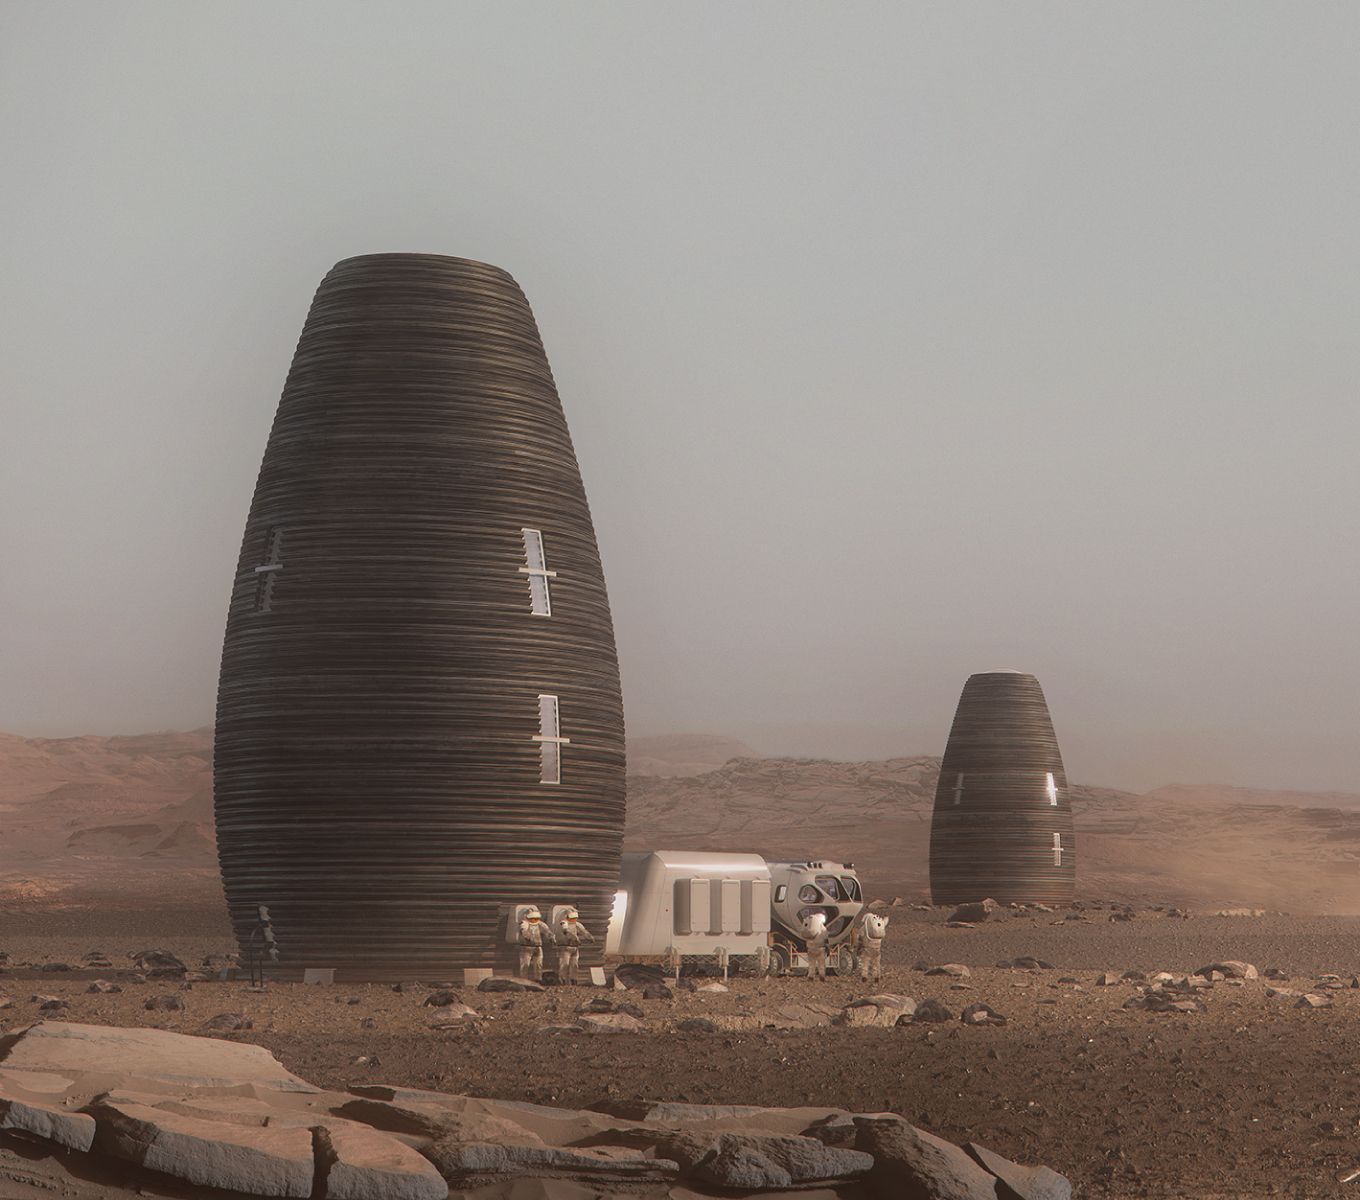 estruturas em formato arredondado e com altura alongada, projetadas para serem habitáveis em Marte.